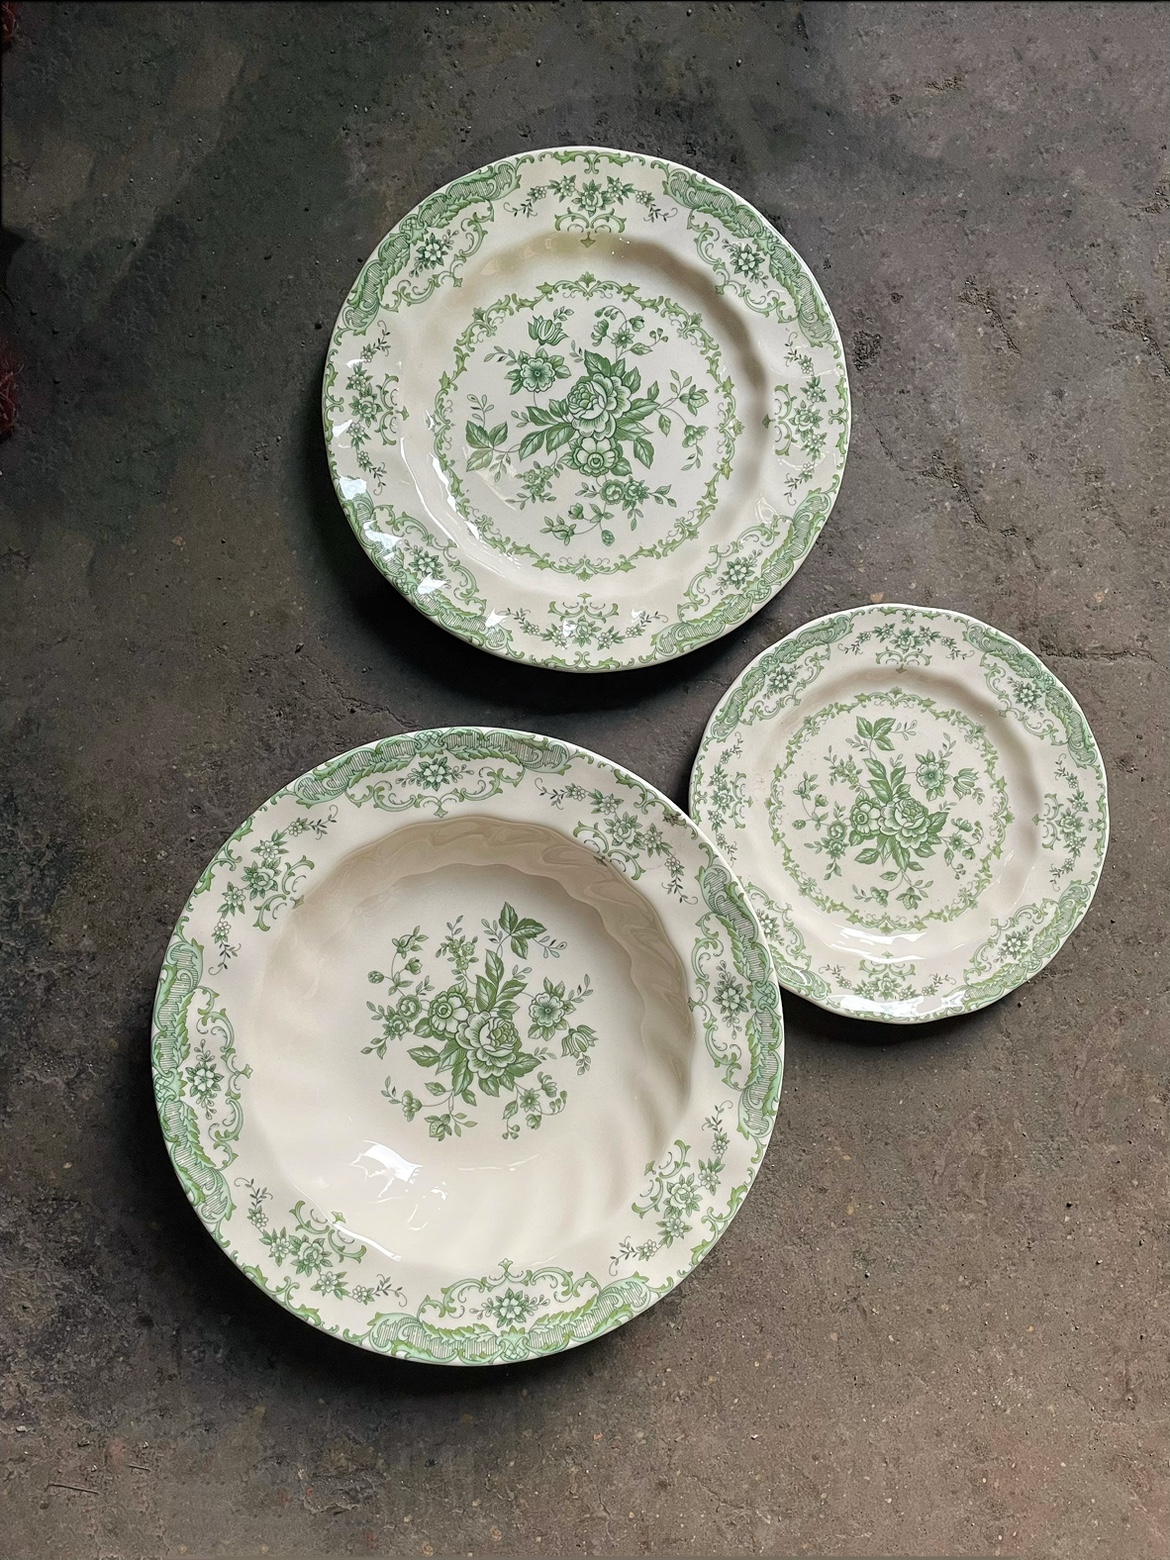 复古绿色花朵vintage中古风格餐盘黄瓷中餐盘子甜品盘碗咖啡杯碟